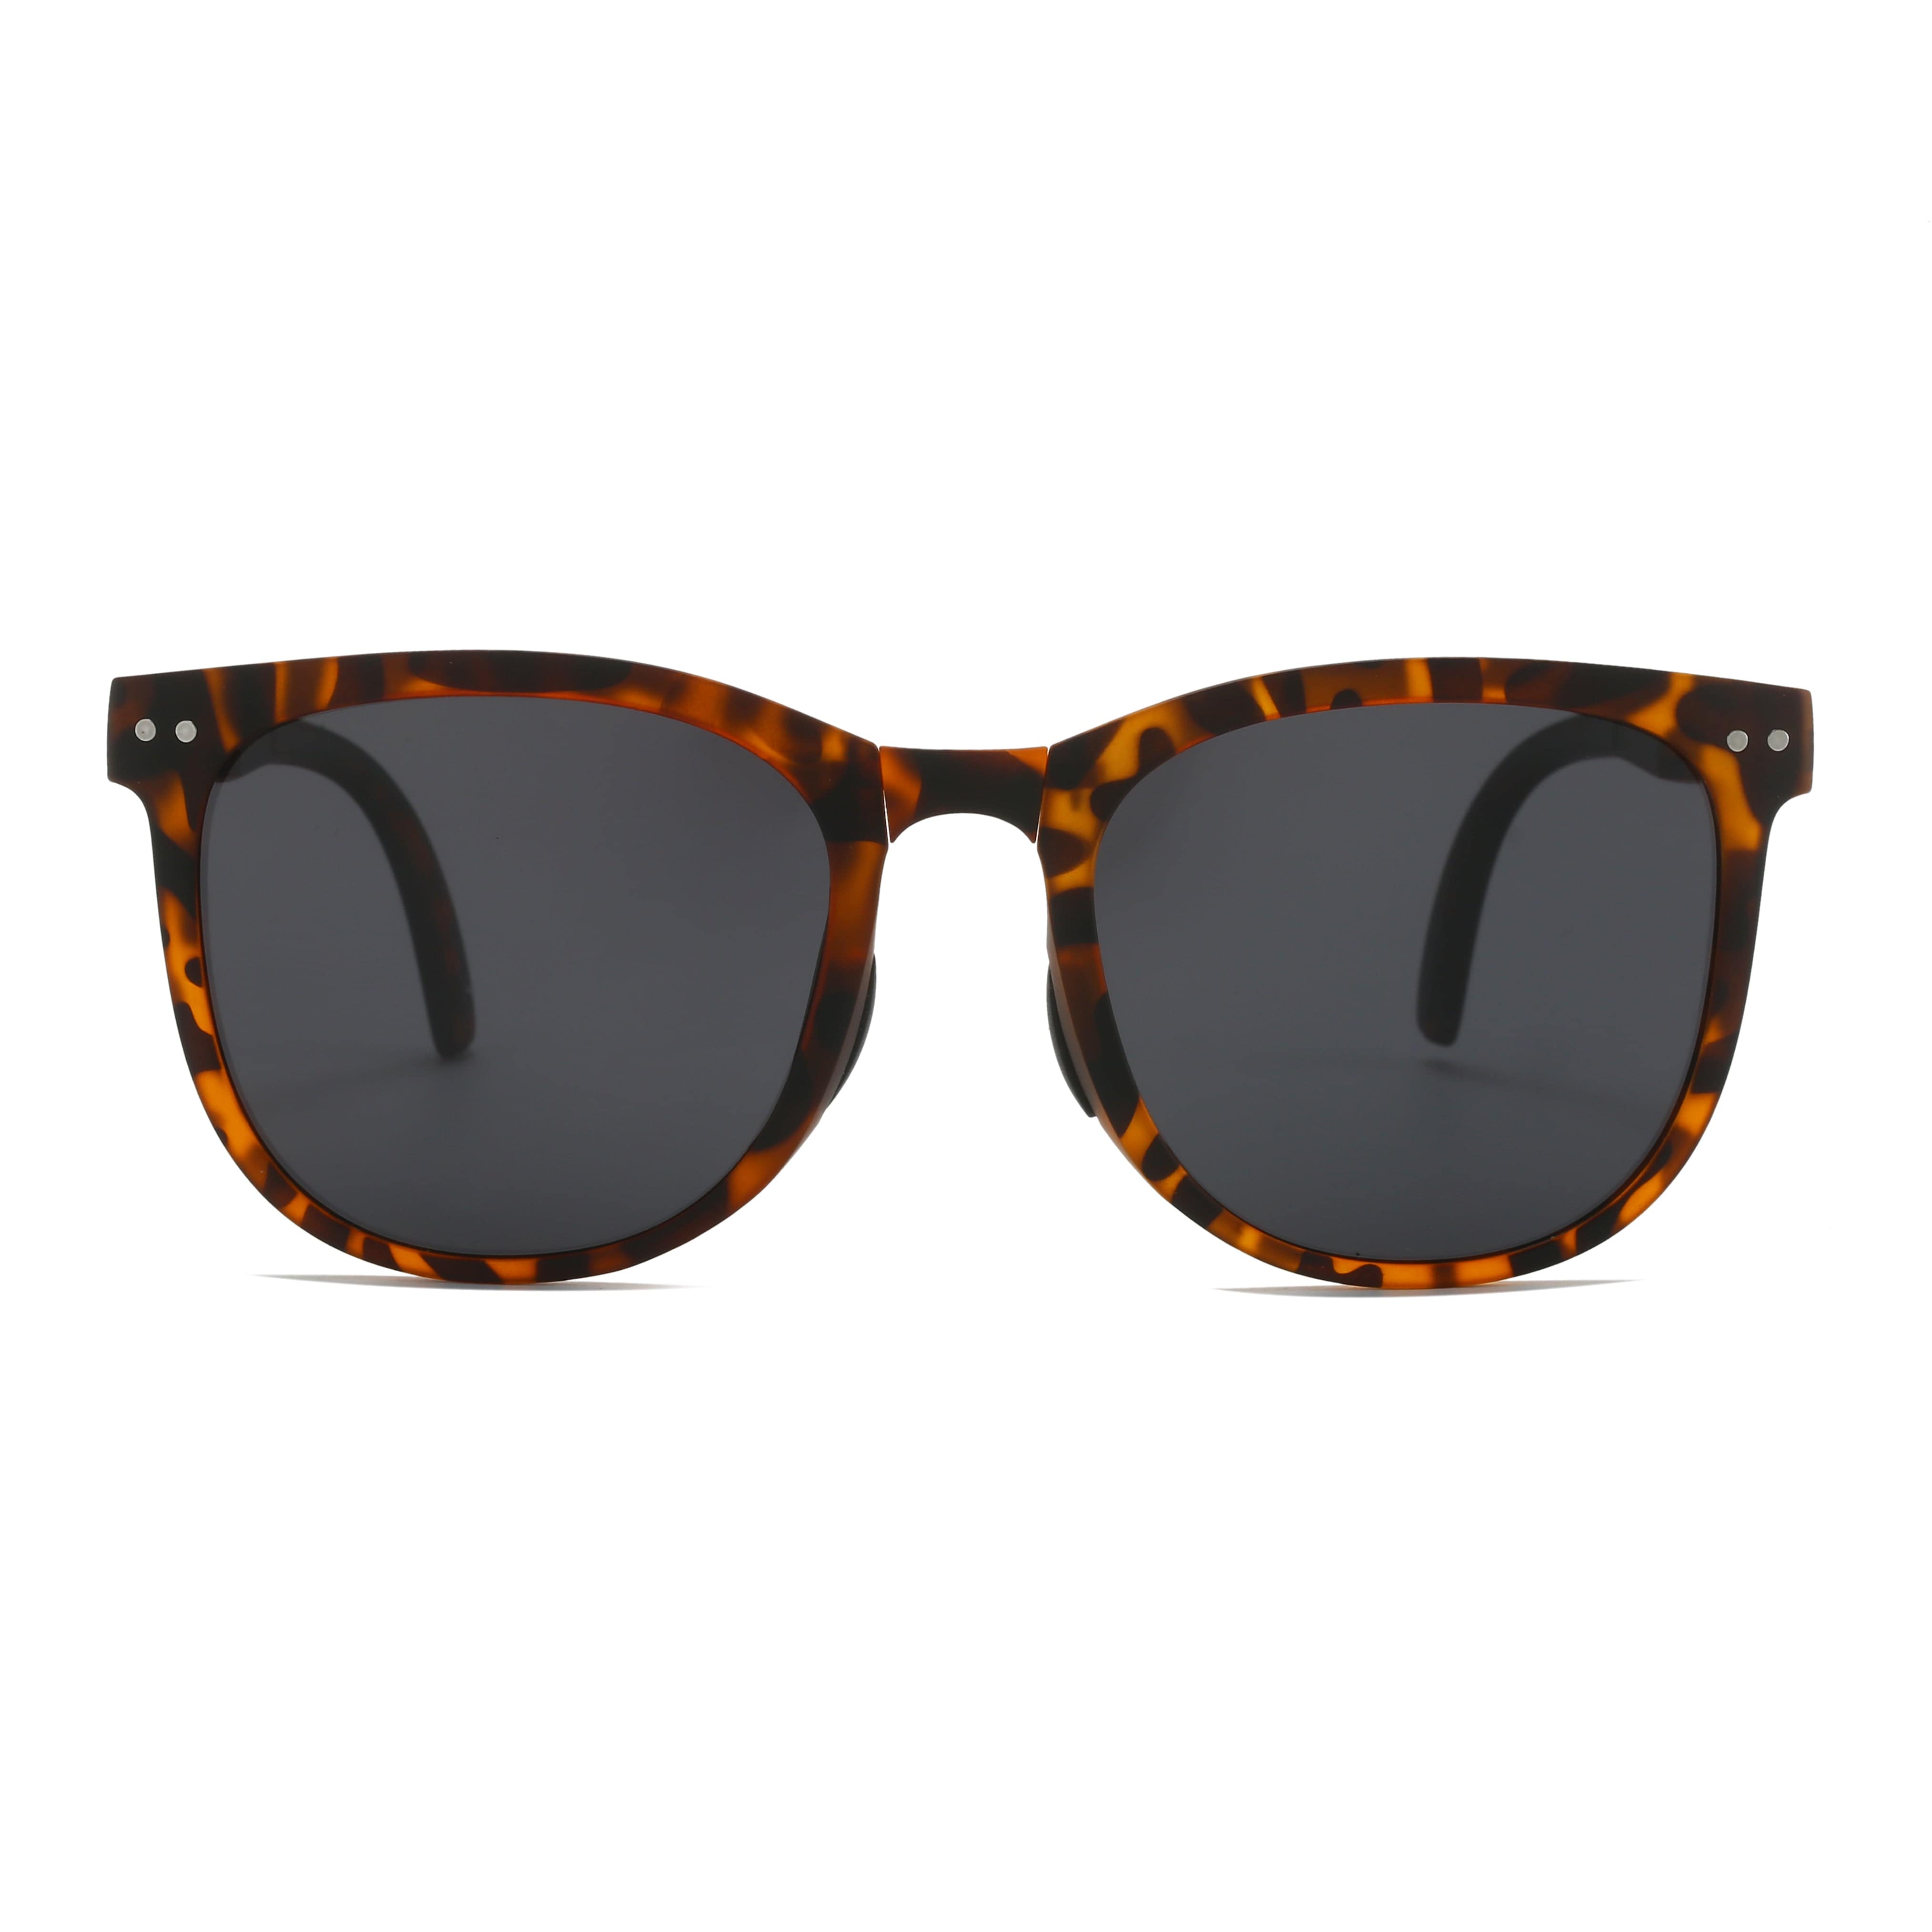 GIUSTIZIERI VECCHI Sunglasses Small / Brown Tortoise Sassy Chic Duo